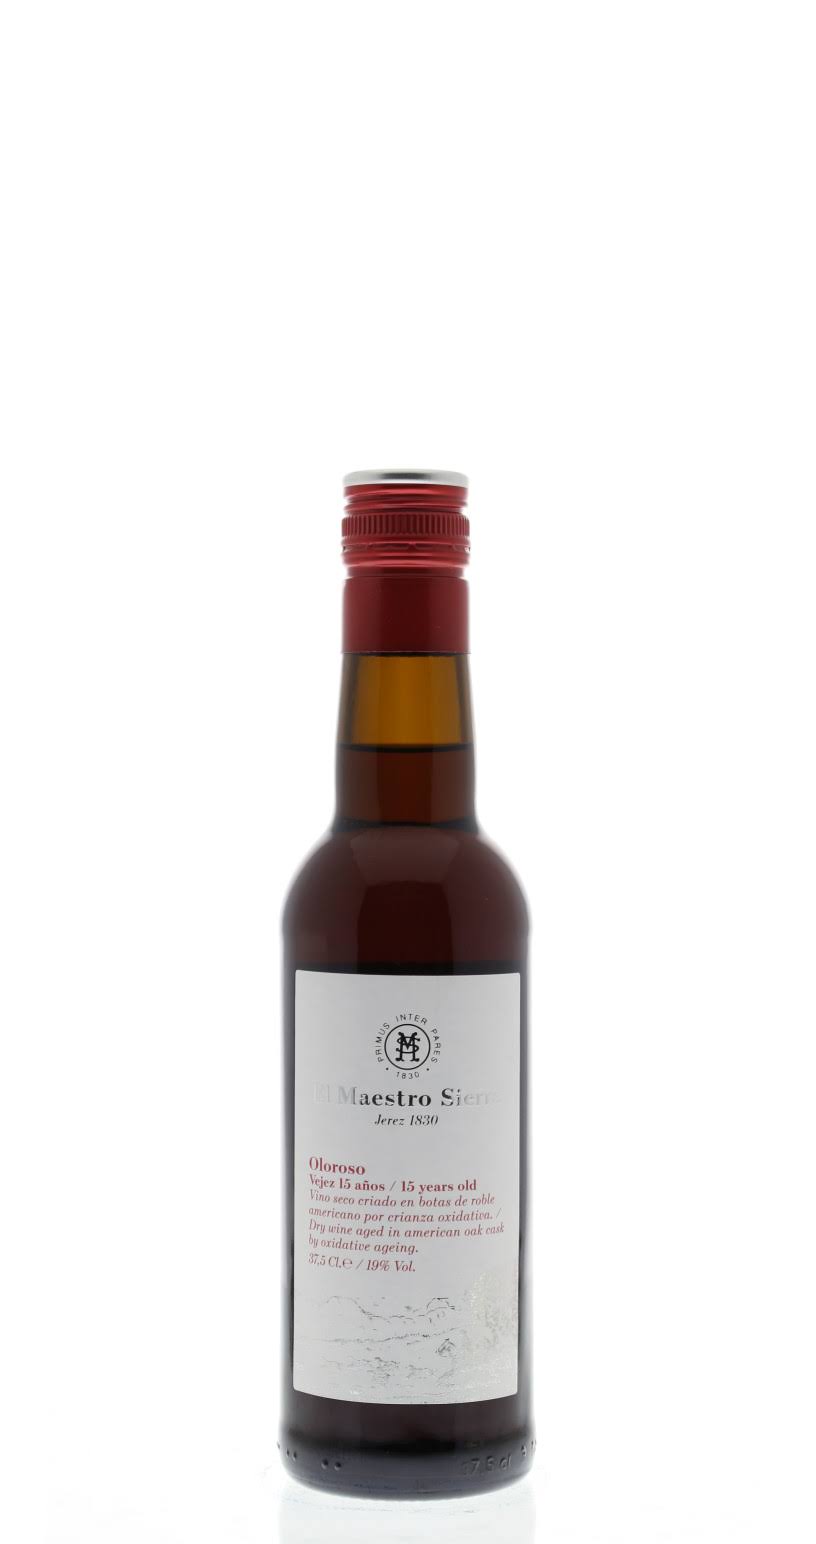 El Maestro Sierra 15 Year Oloroso Sherry, Spain (Vintage Varies) - 375 ml bottle